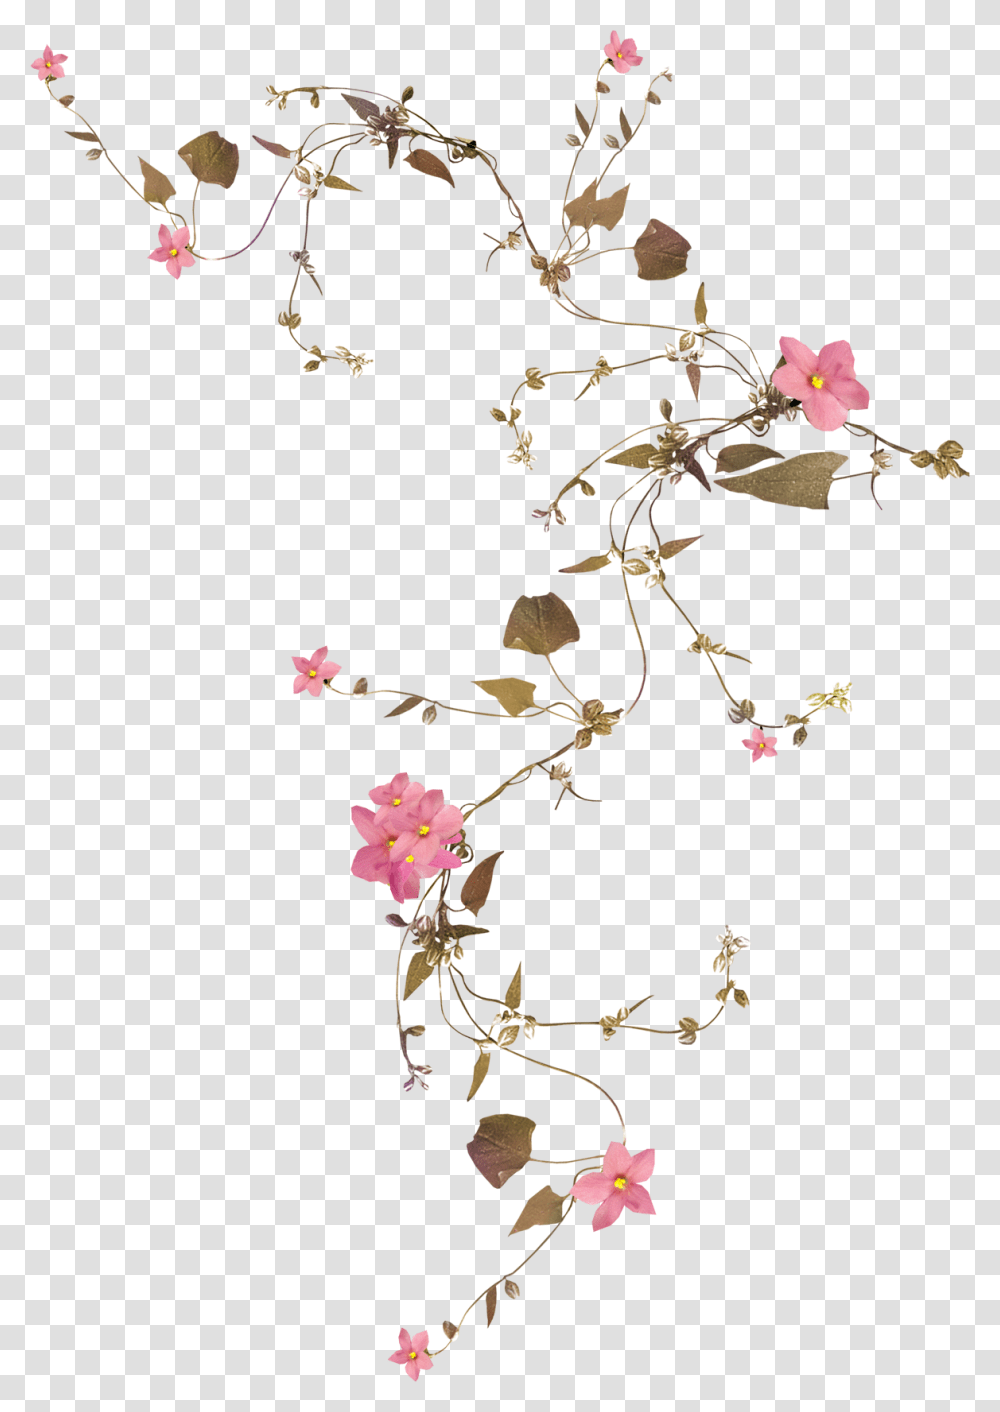 Flower Vine Rose Drawing Flower Vine Background, Poster, Advertisement Transparent Png